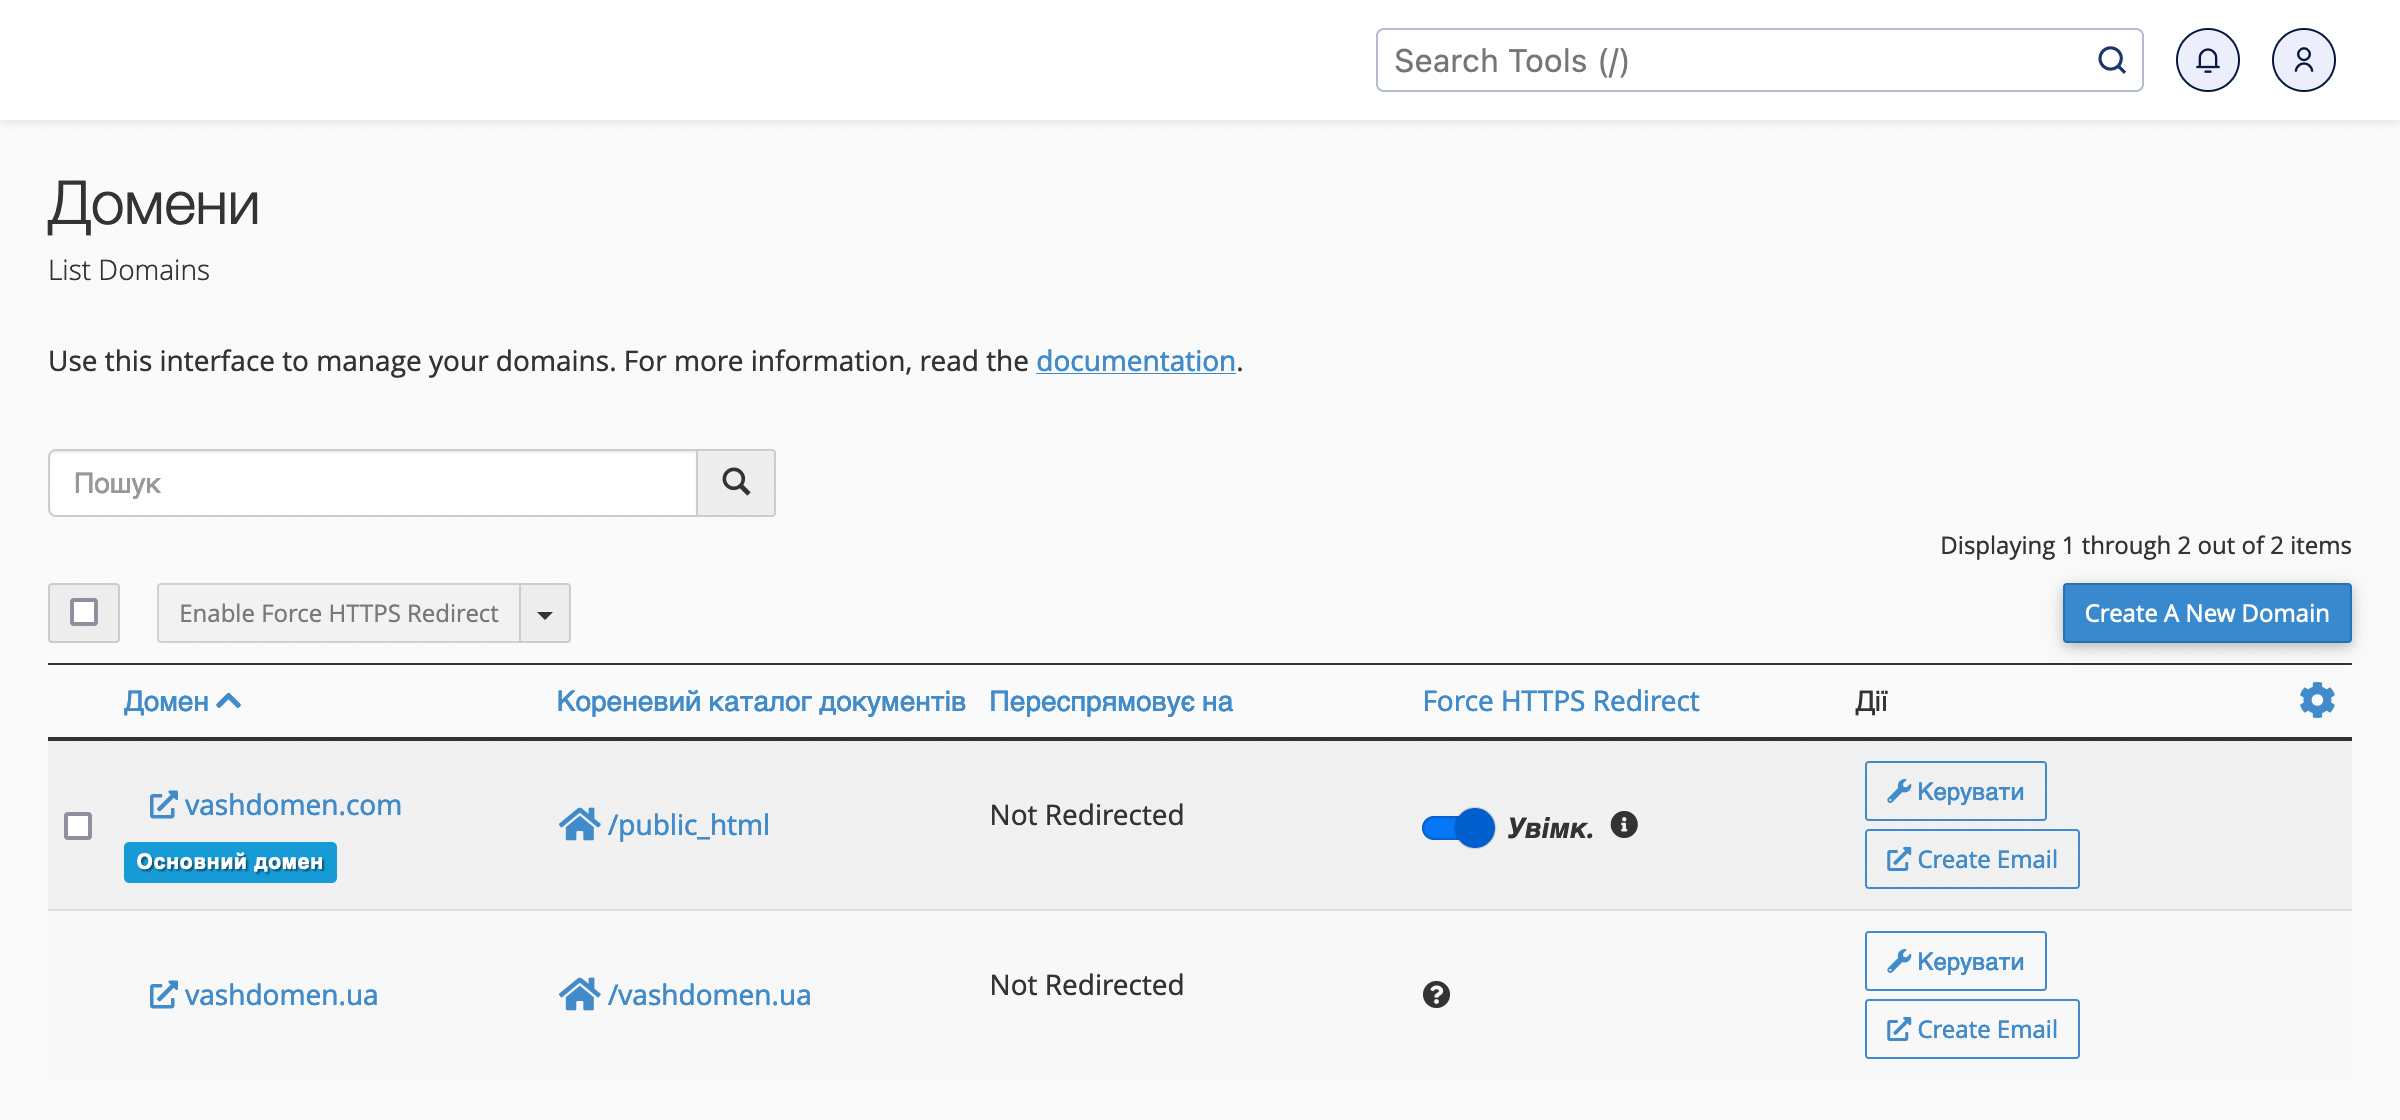 Немає перемикача «Force HTTPs Redirect» у додатку «Домени» у cPanel